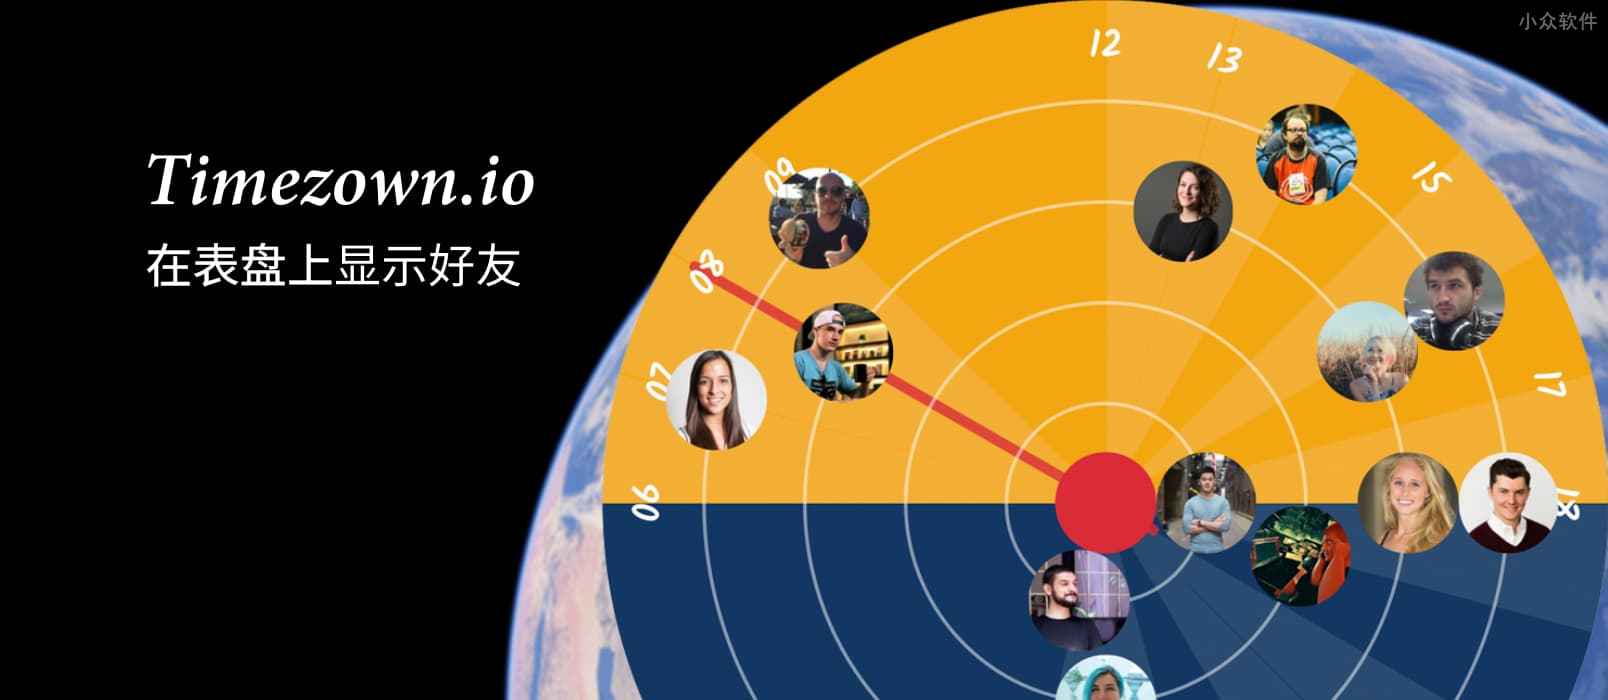 Timezown.io – 在「表盘」上显示世界各地的好友时区 [Web]